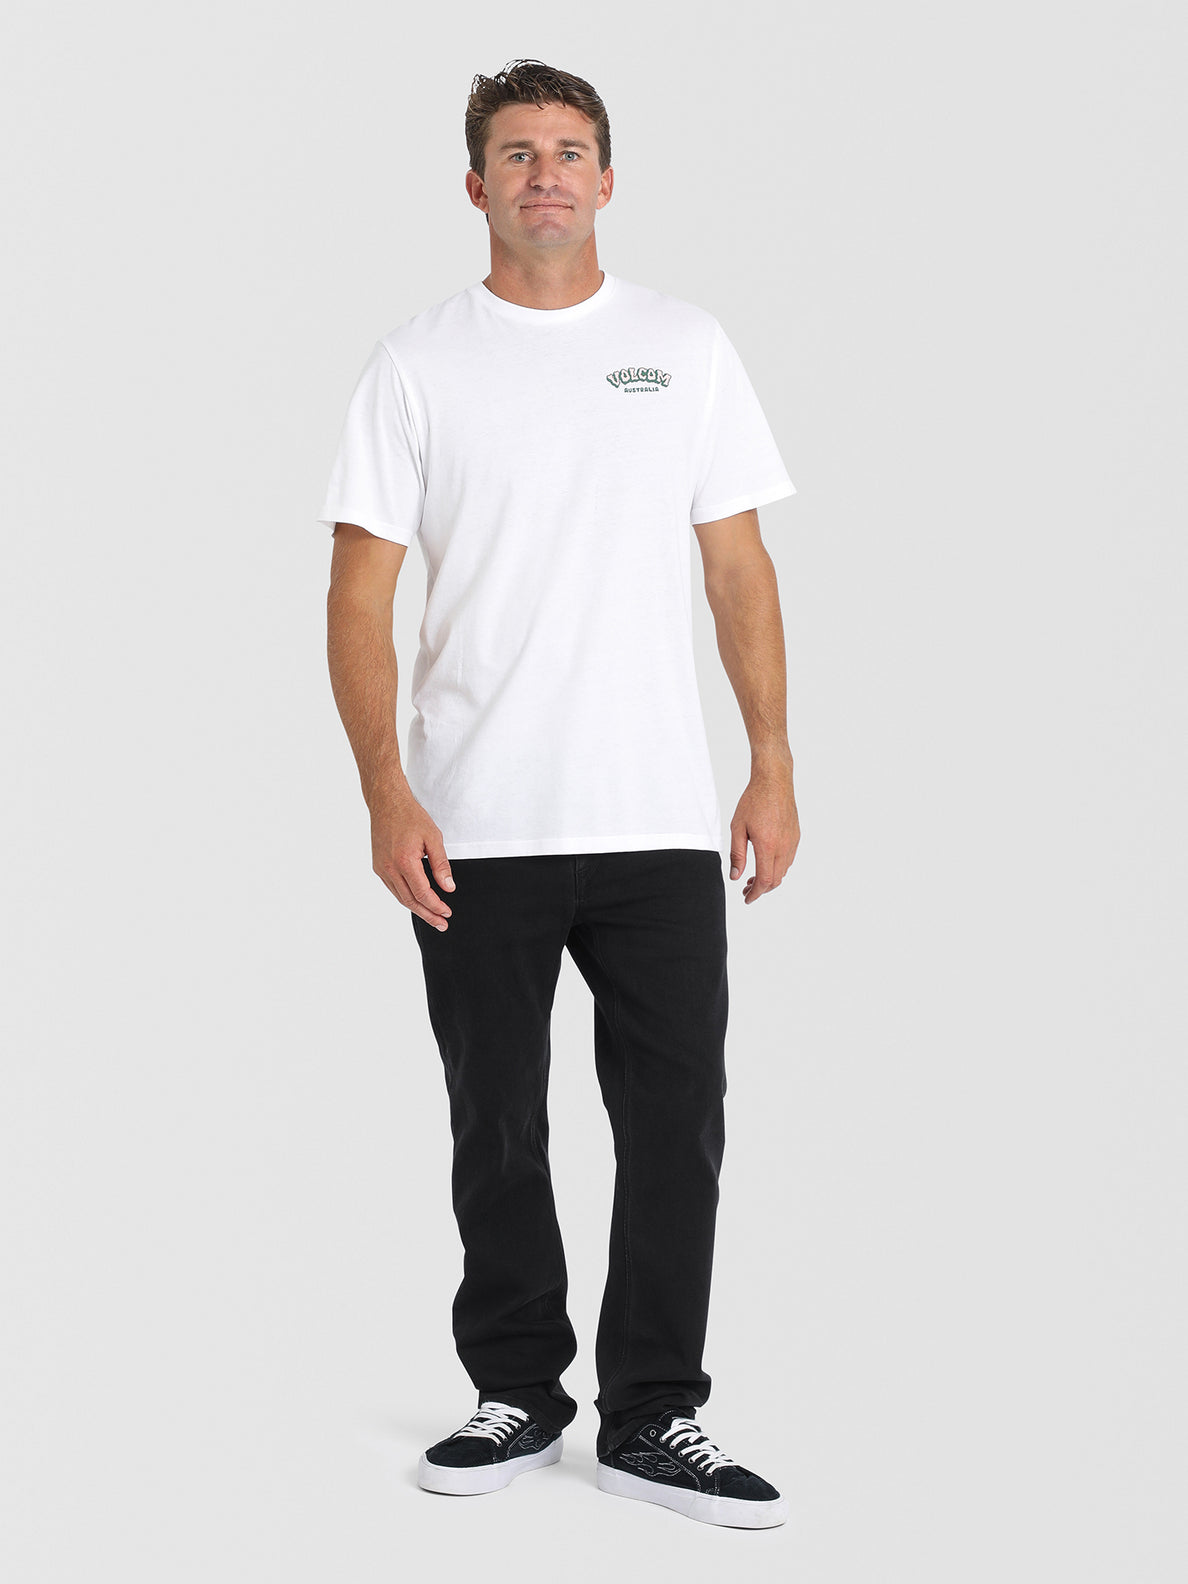 Stoney Island Short Sleeve T-Shirt - White